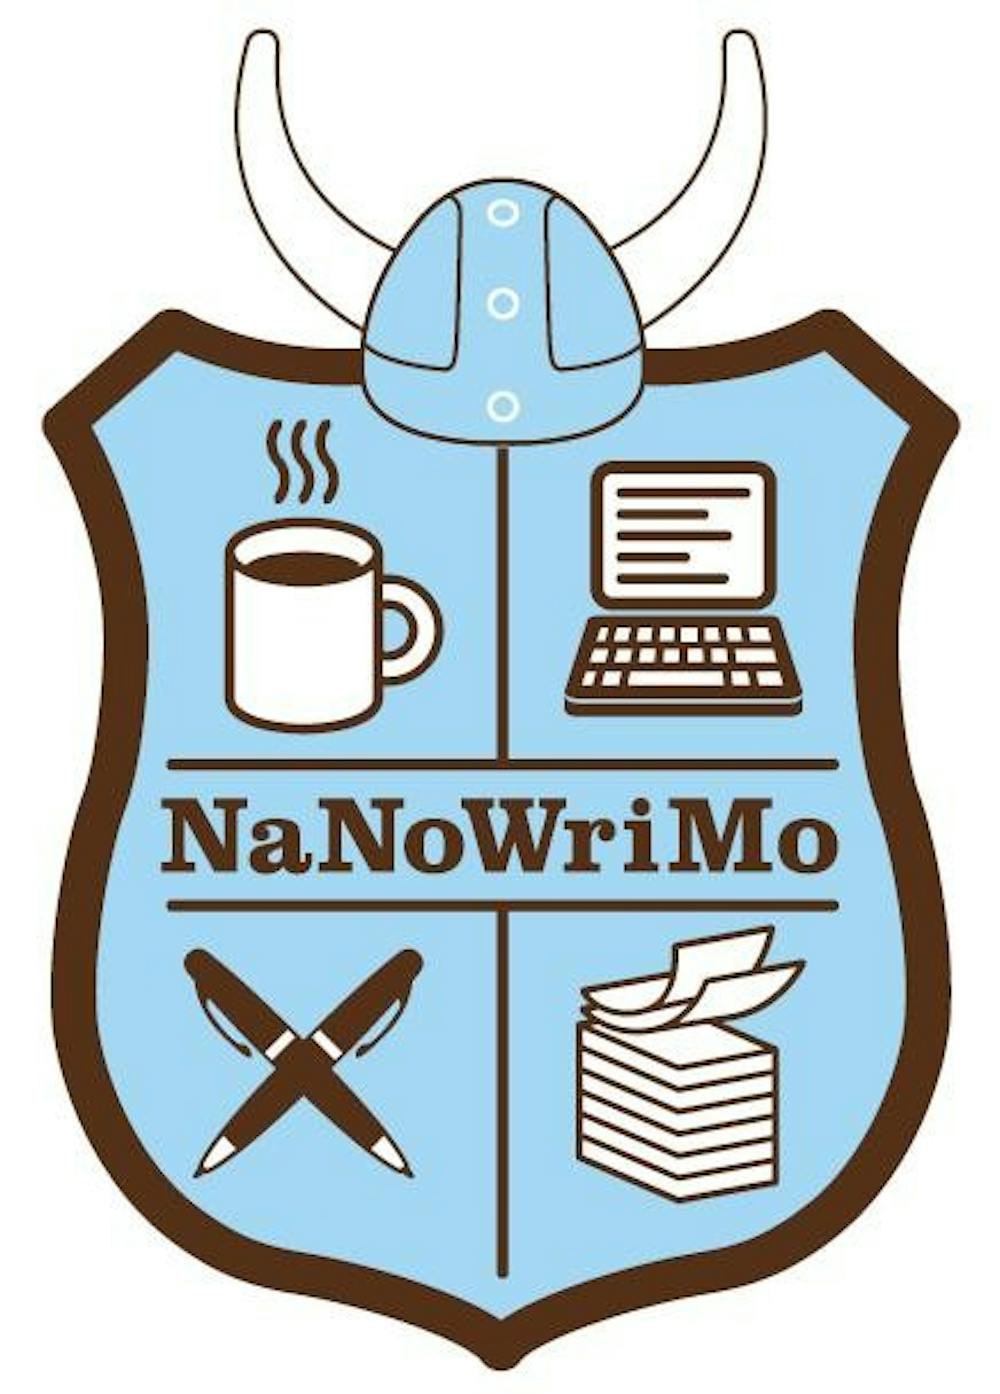 NaNoWriMo comes to a close